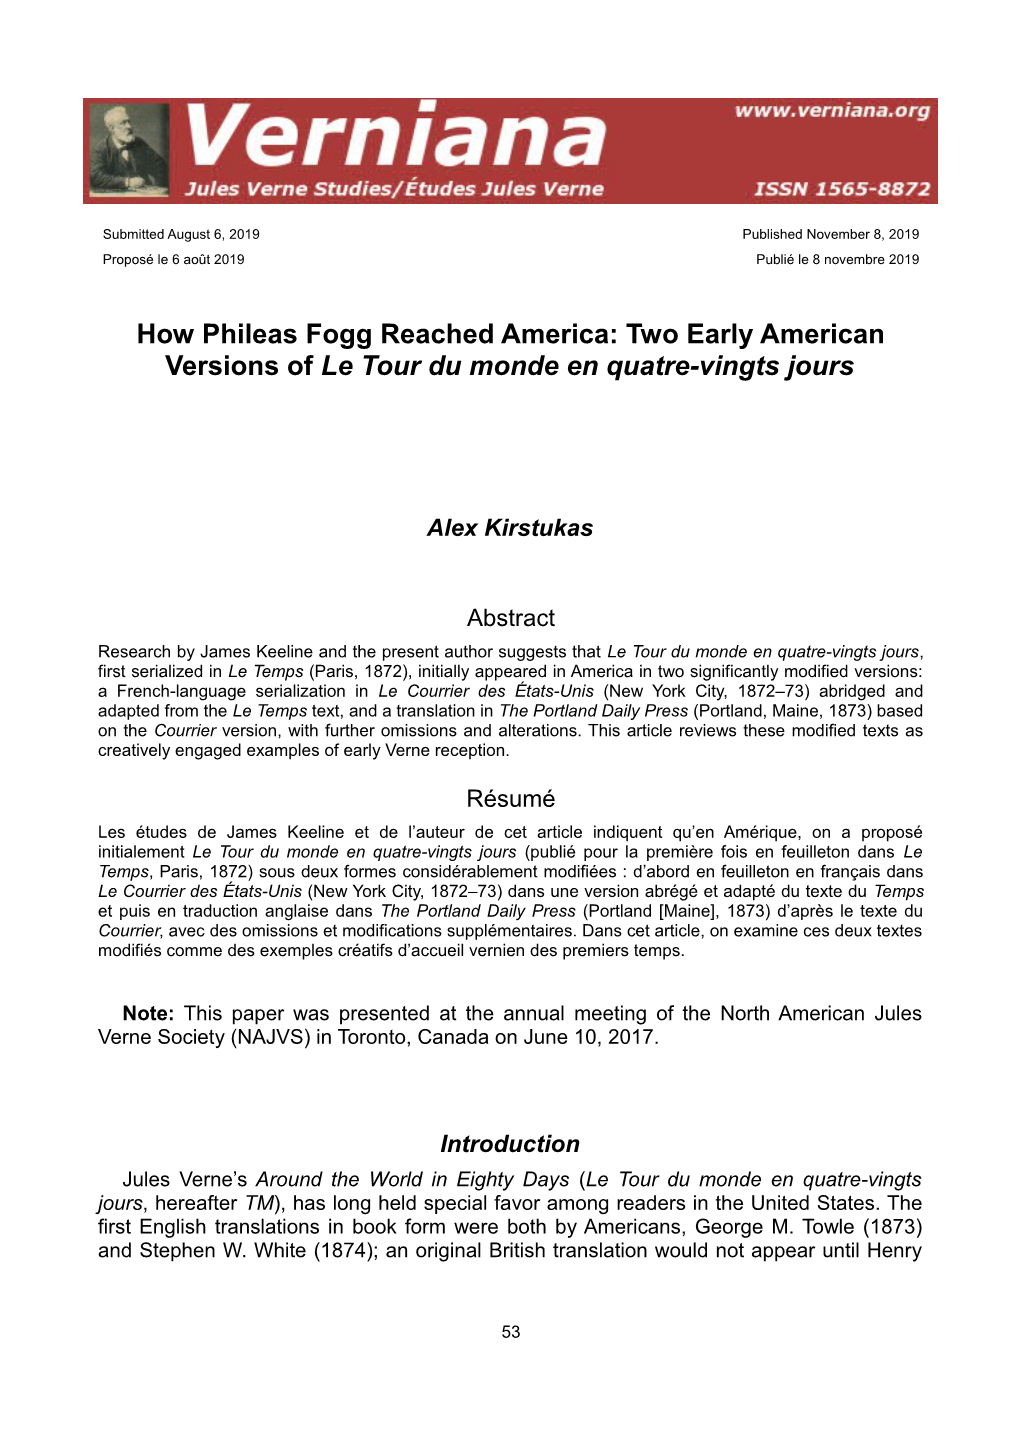 How Phileas Fogg Reached America: Two Early American Versions of Le Tour Du Monde En Quatre-Vingts Jours